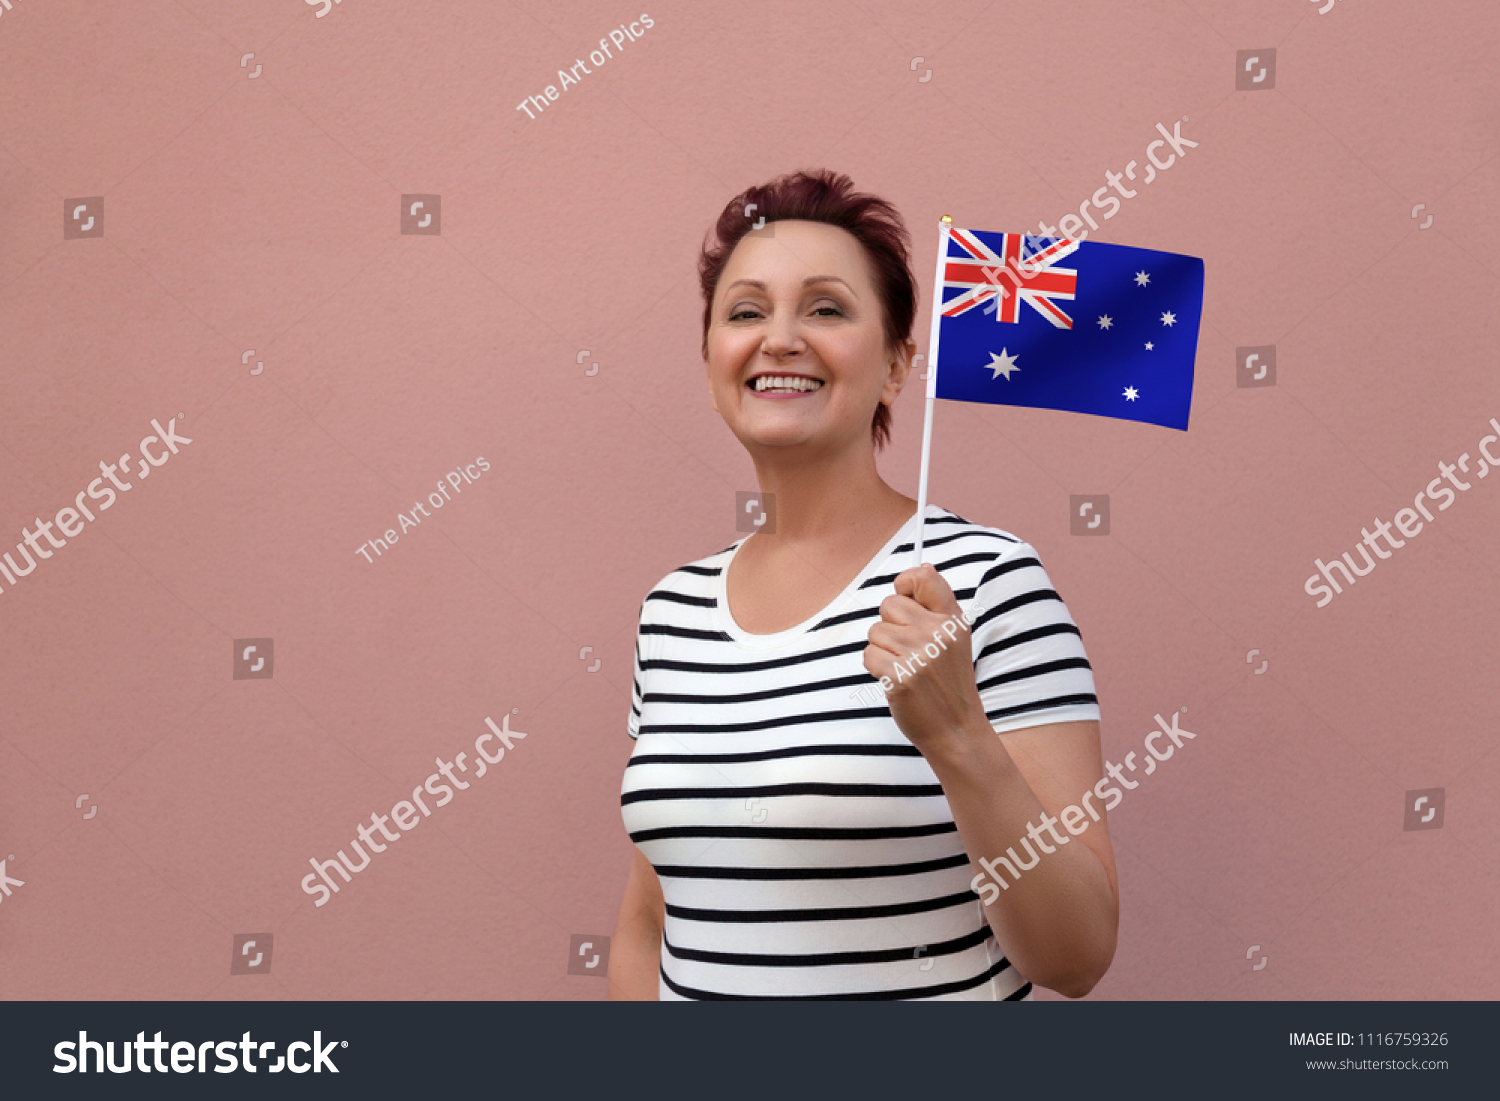 Australian Flag Woman Holding Australia Flag Stock Photo Now) 1116759326